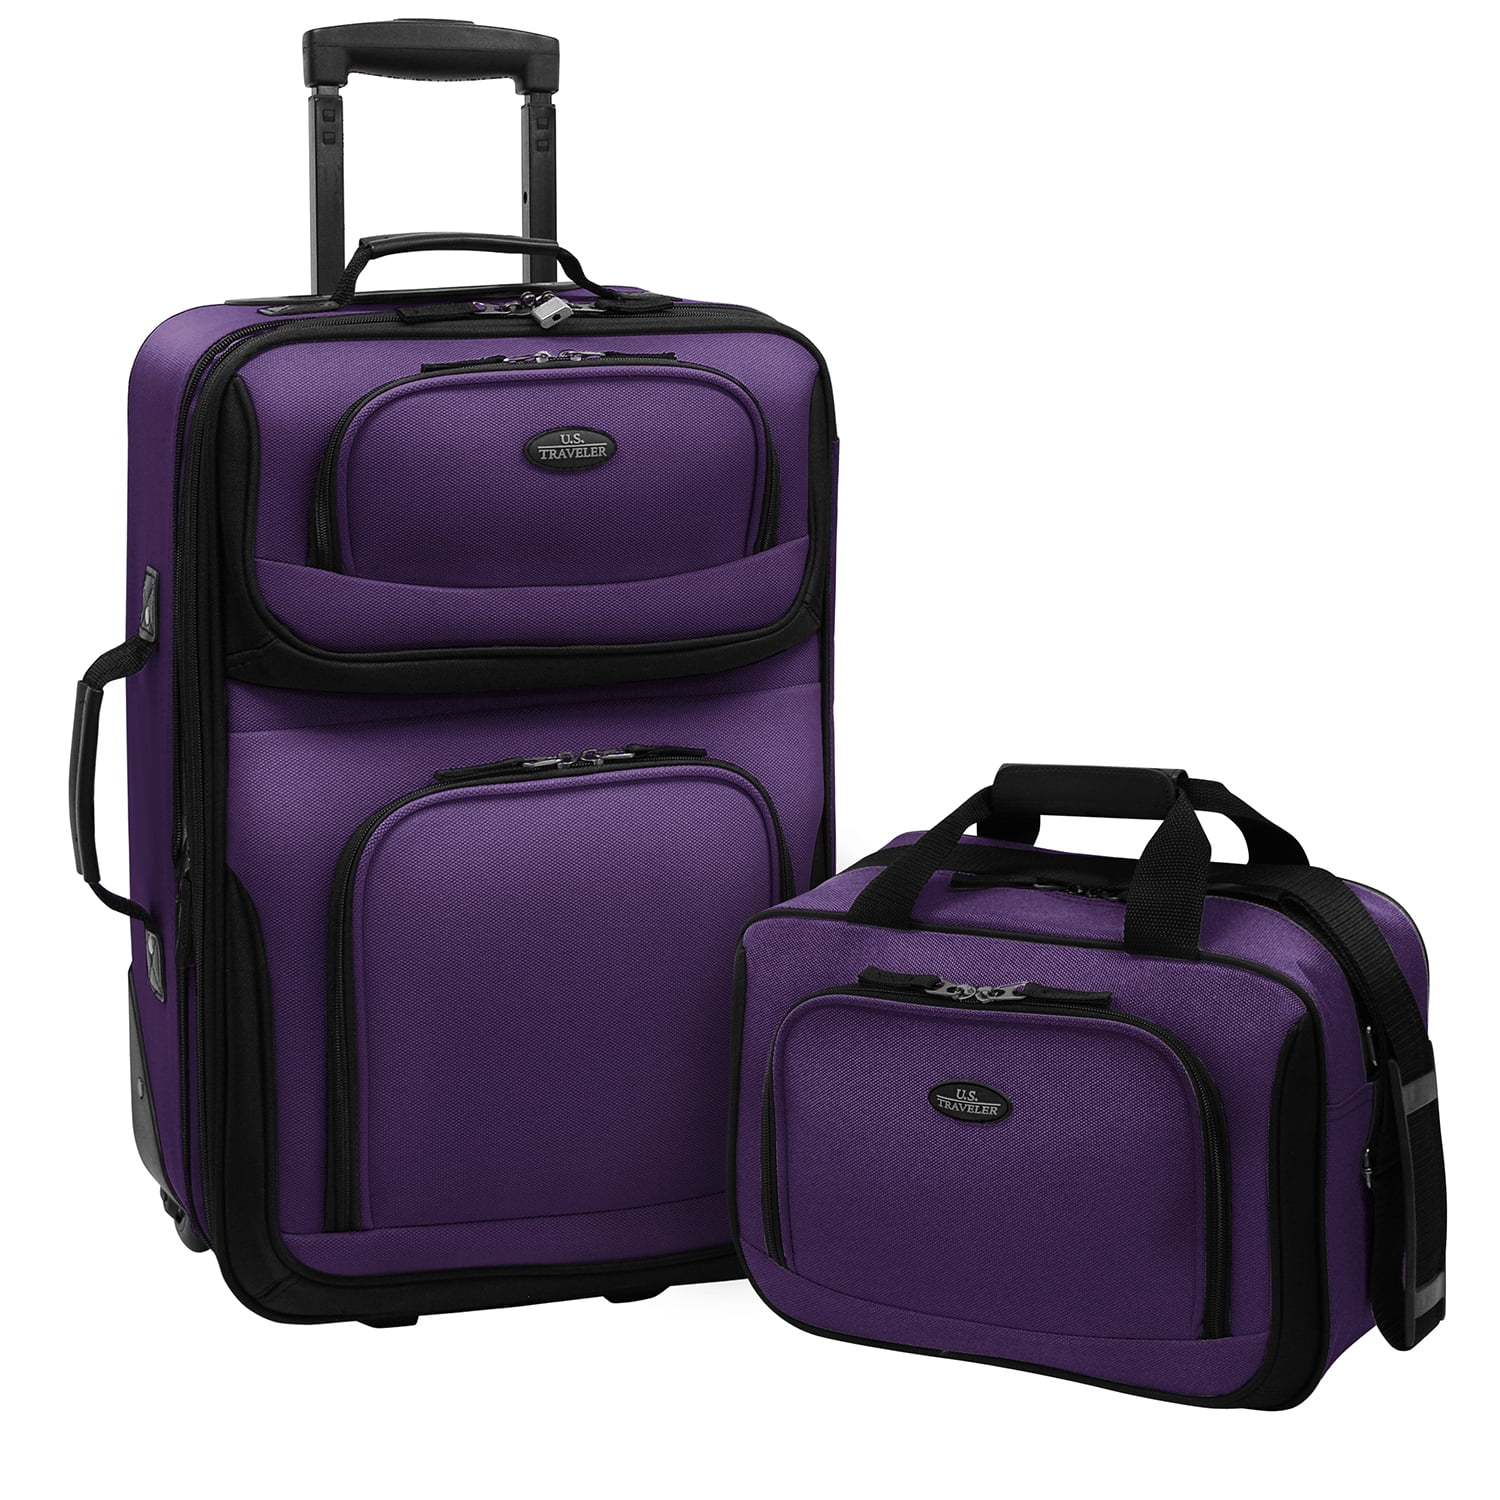 Photo 1 of U.S. Traveler 2pc Luggage Set - Purple